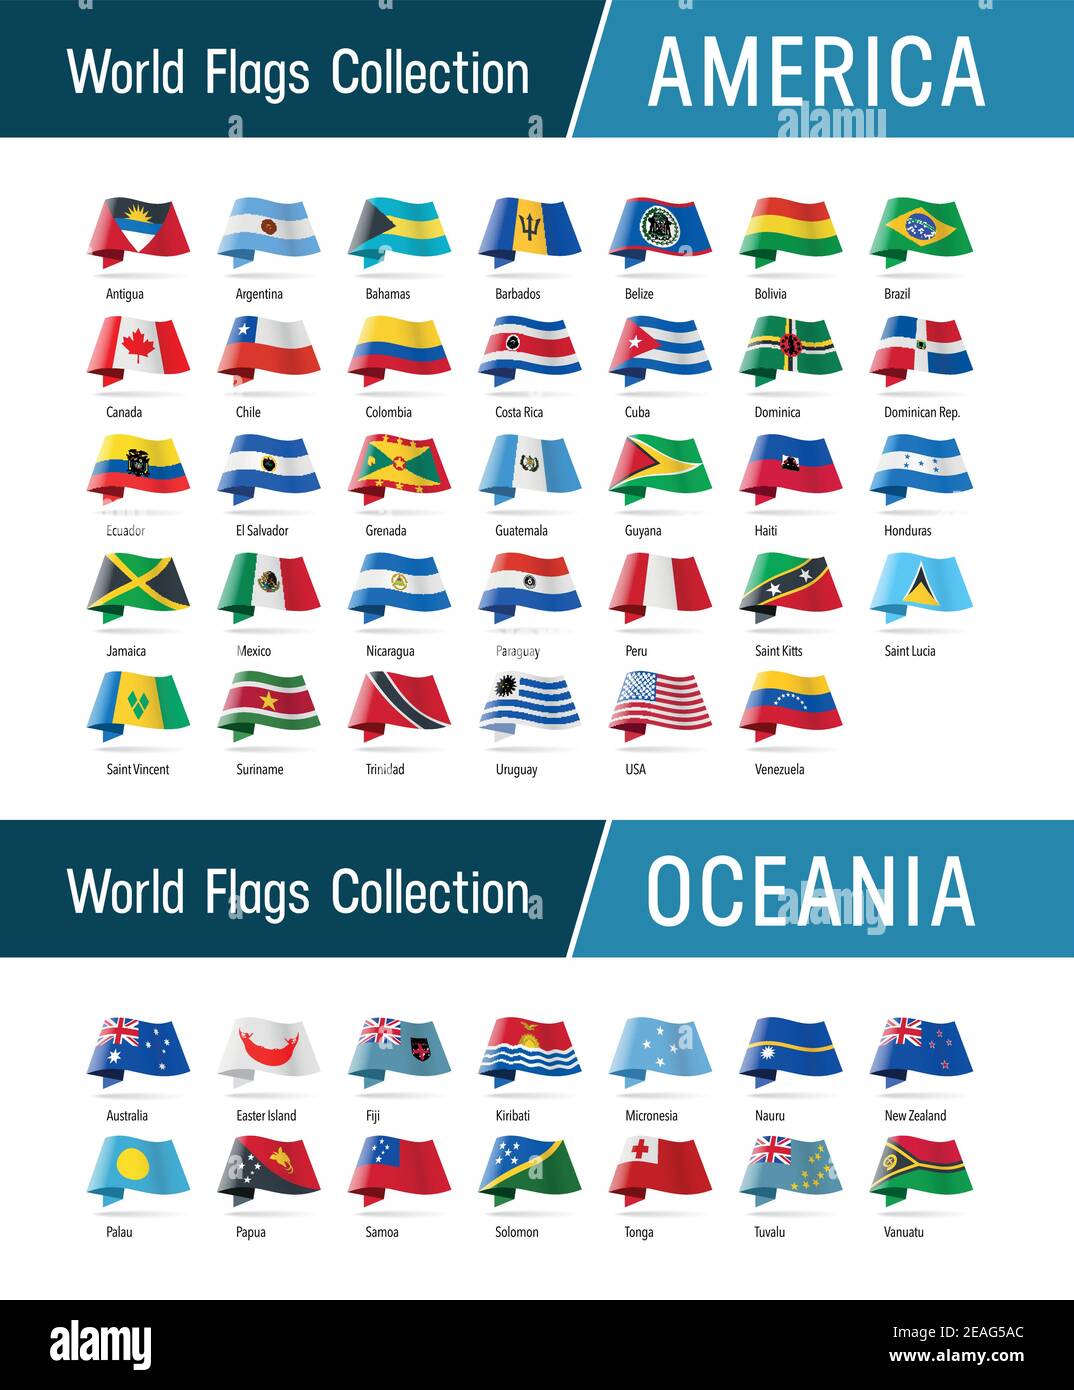 Flaggen von Amerika und Ozeanien, winken im Wind. Symbole, die auf Position, Herkunft und Sprache verweisen. Vector Welt Flaggen Kollektion. Stock Vektor